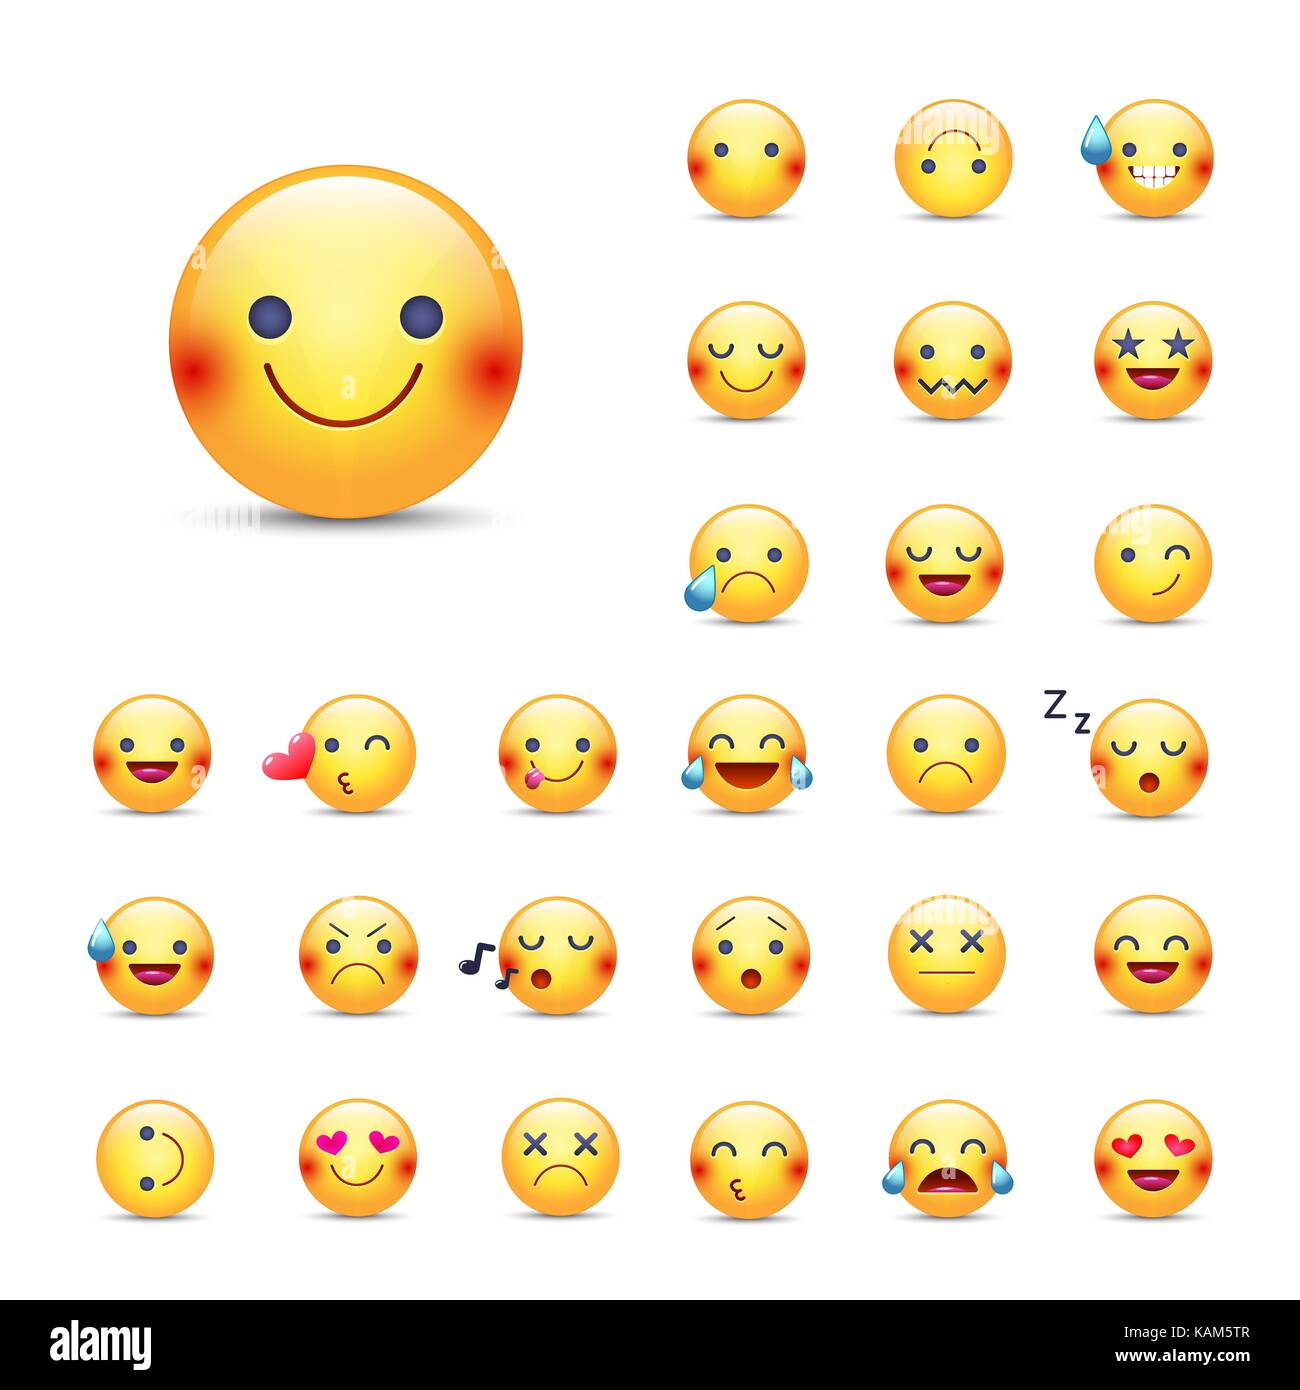 Smileys vektor Icon Set. Emoticons Pack. Glücklich, fröhlich, Singen,  Schlafen, Ninja, Weinen, in Liebe und andere runde gelbe emoji Gesicht.  Große Sammlung o Stock-Vektorgrafik - Alamy